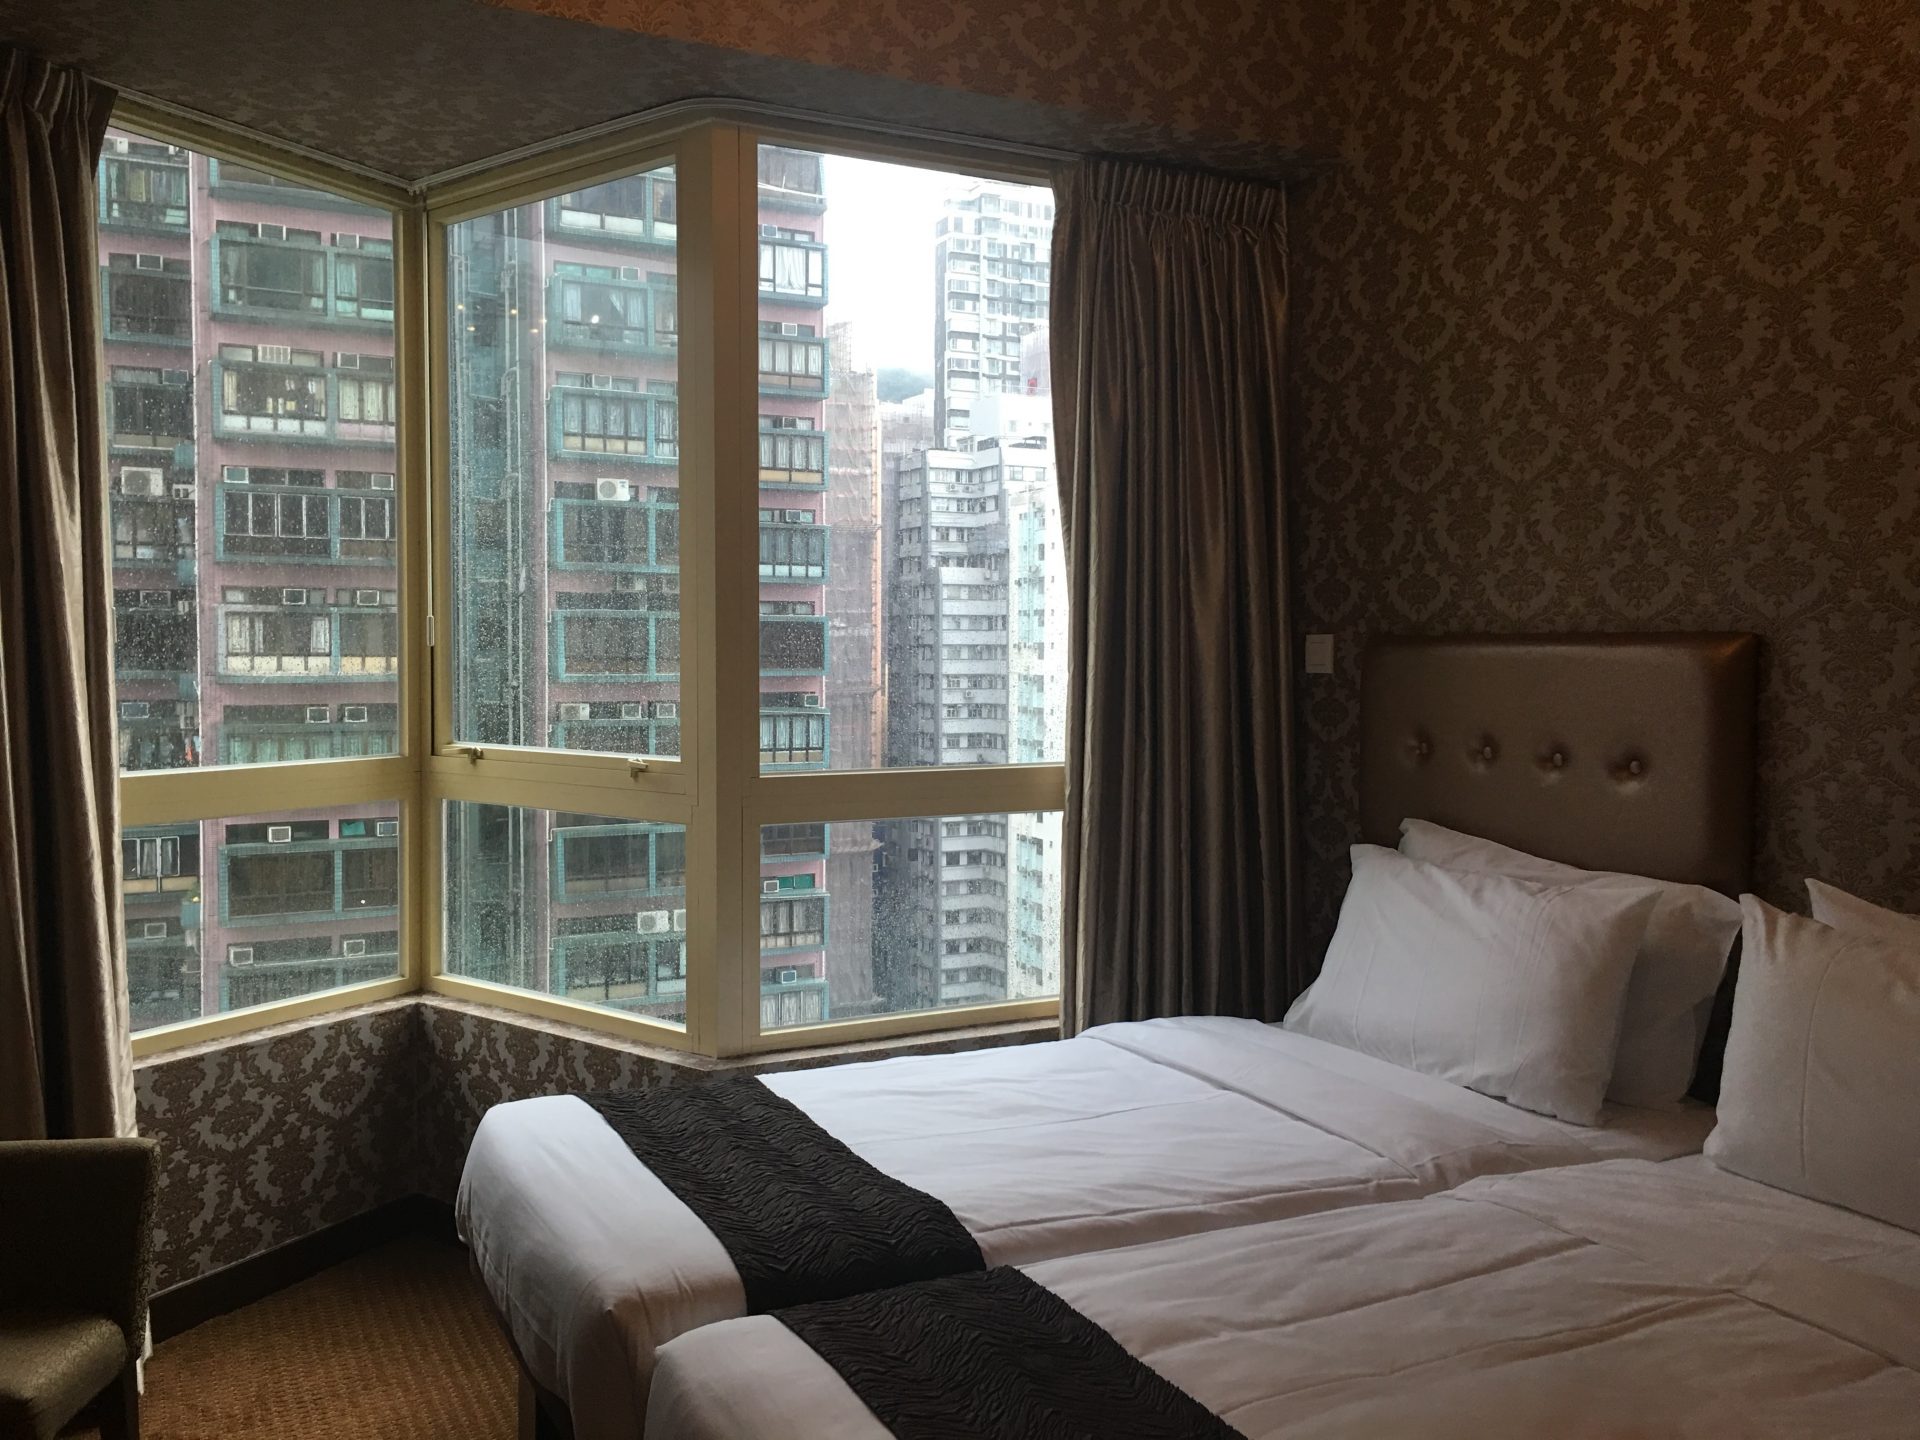 grand city hotel hong kong - Grand City Hotel Hong Kong Review